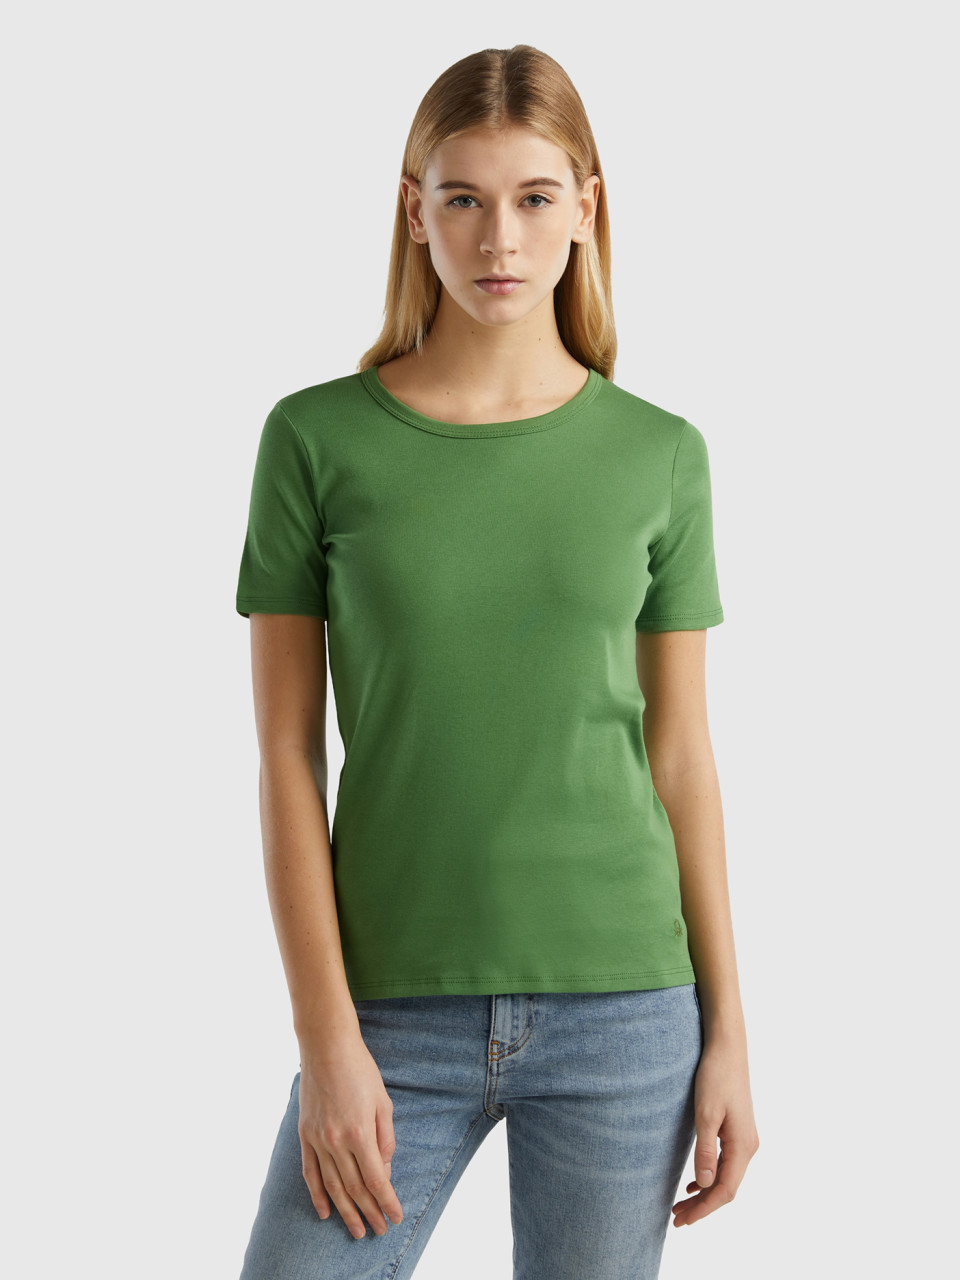 Benetton, Long Fiber Cotton T-shirt, Military Green, Women